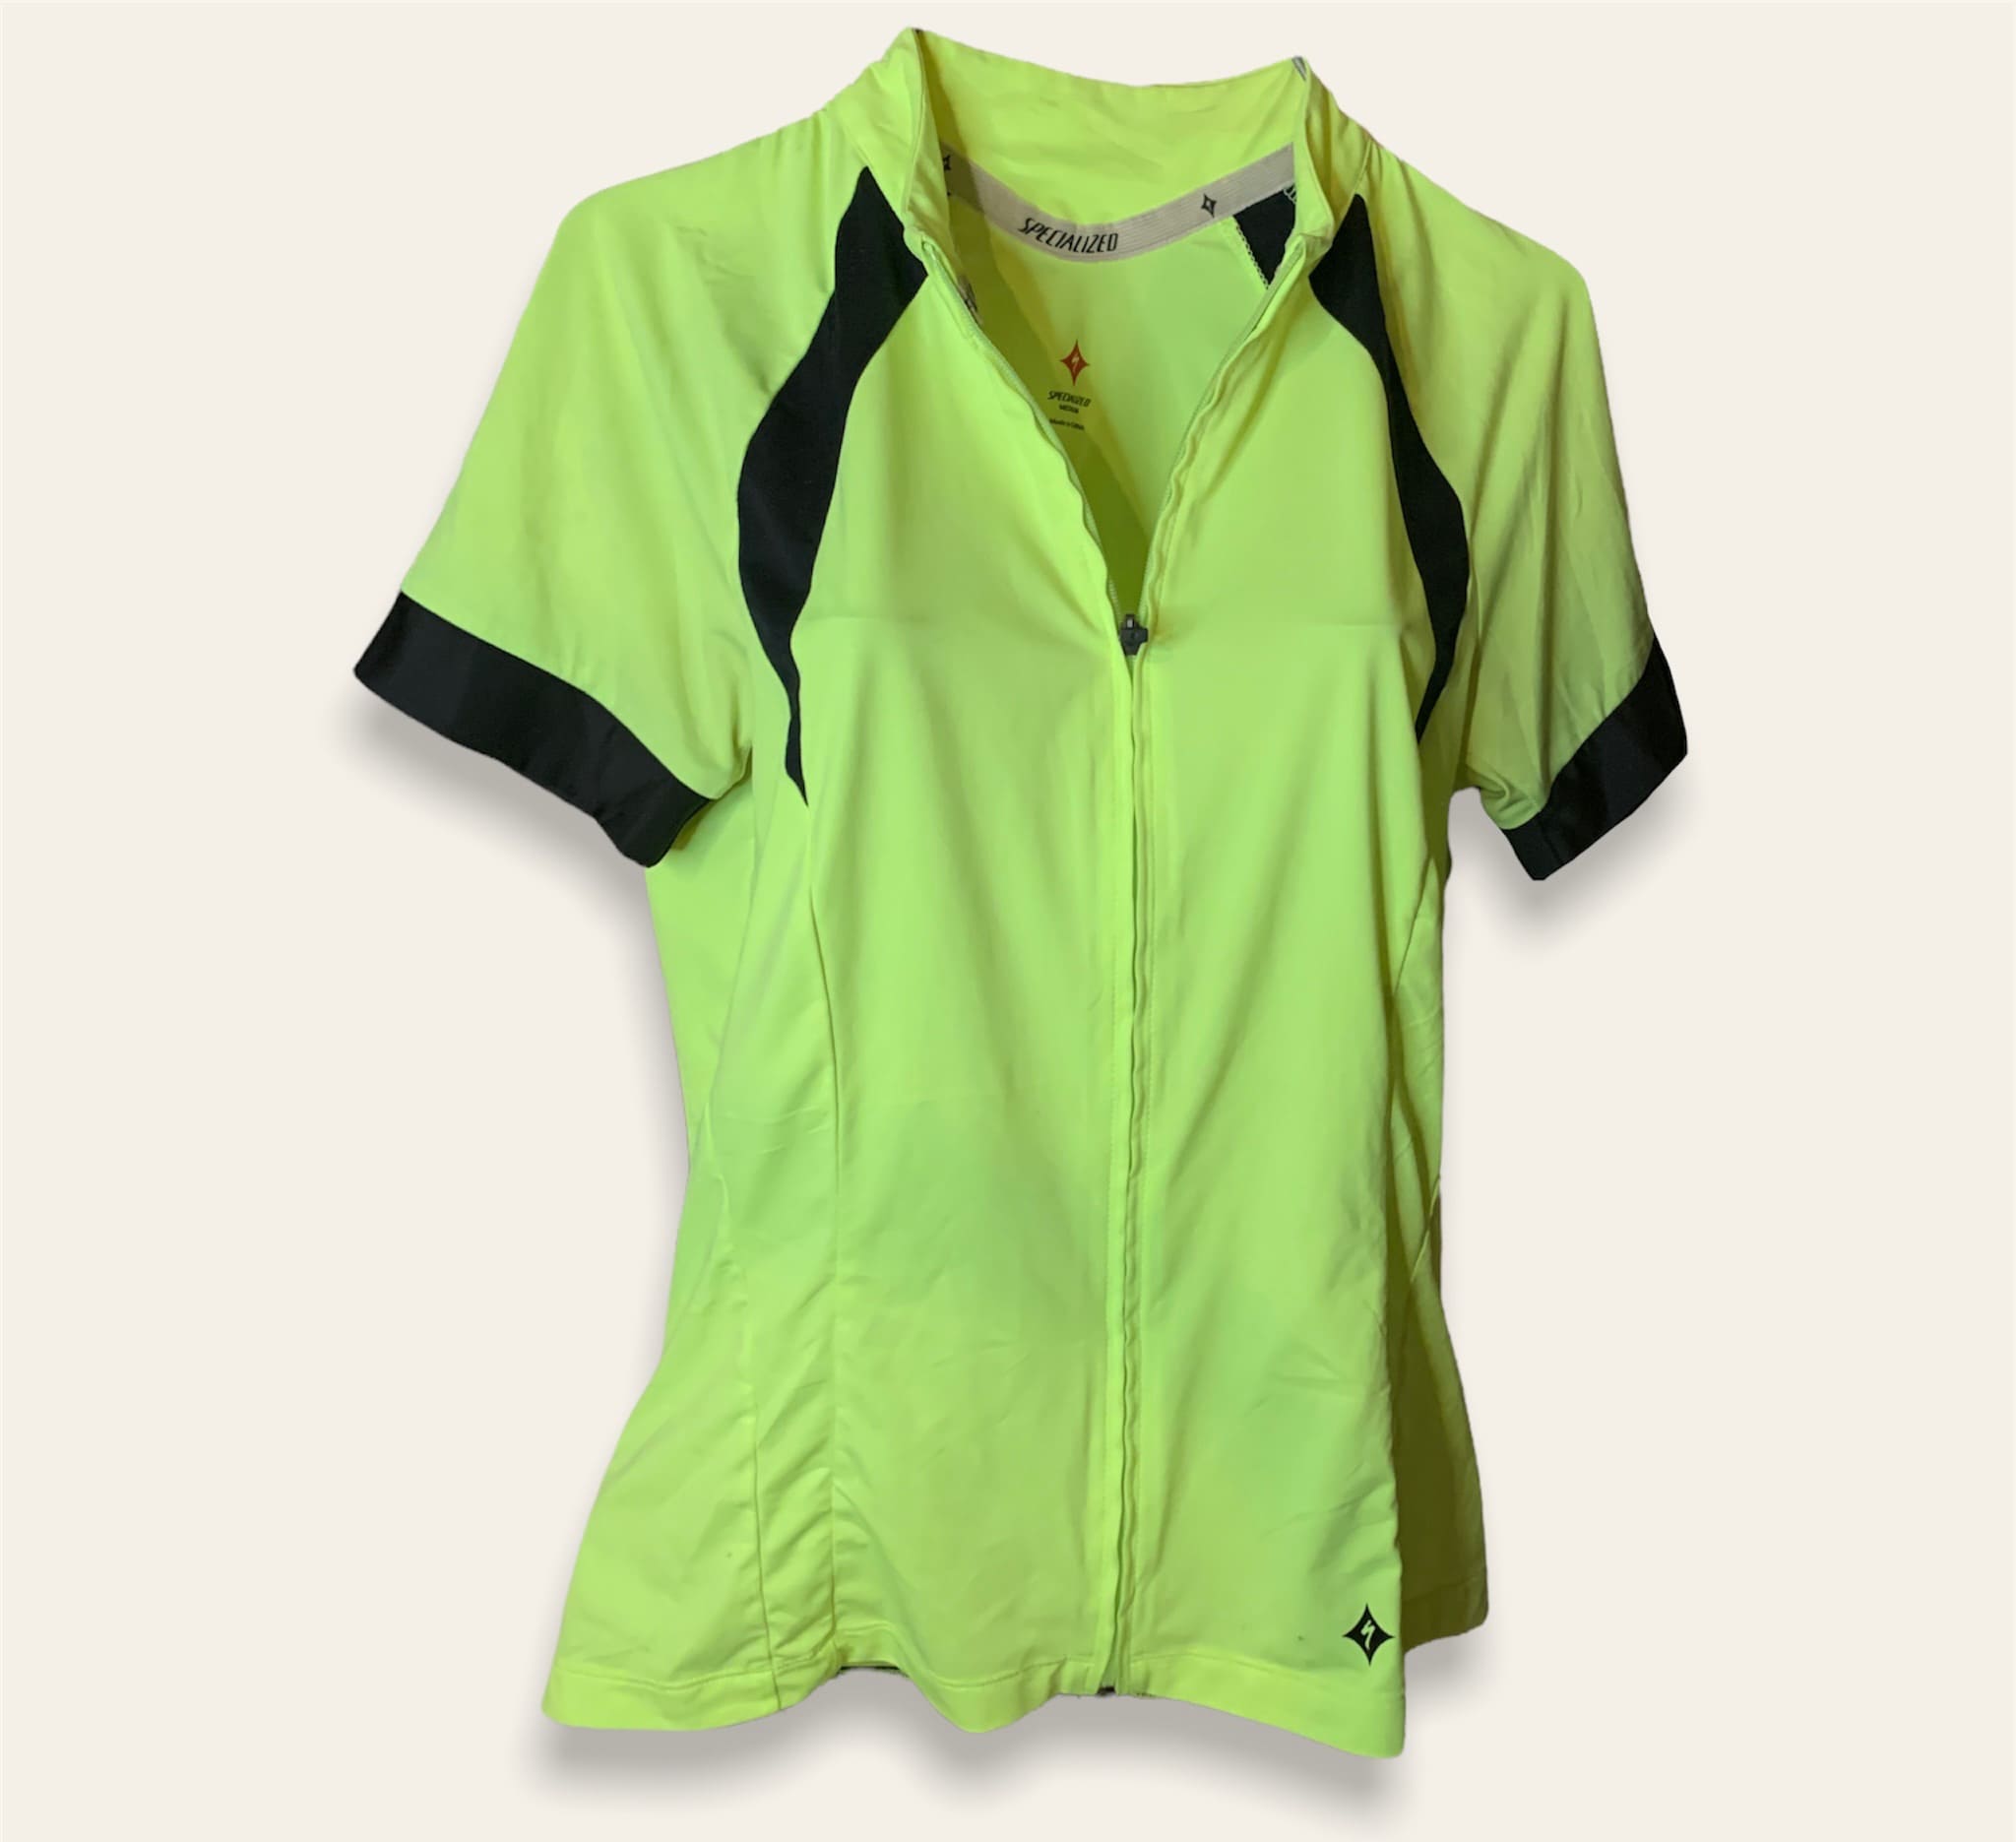 ciclismo amarilla con negras specialized playera - Glow Fashion